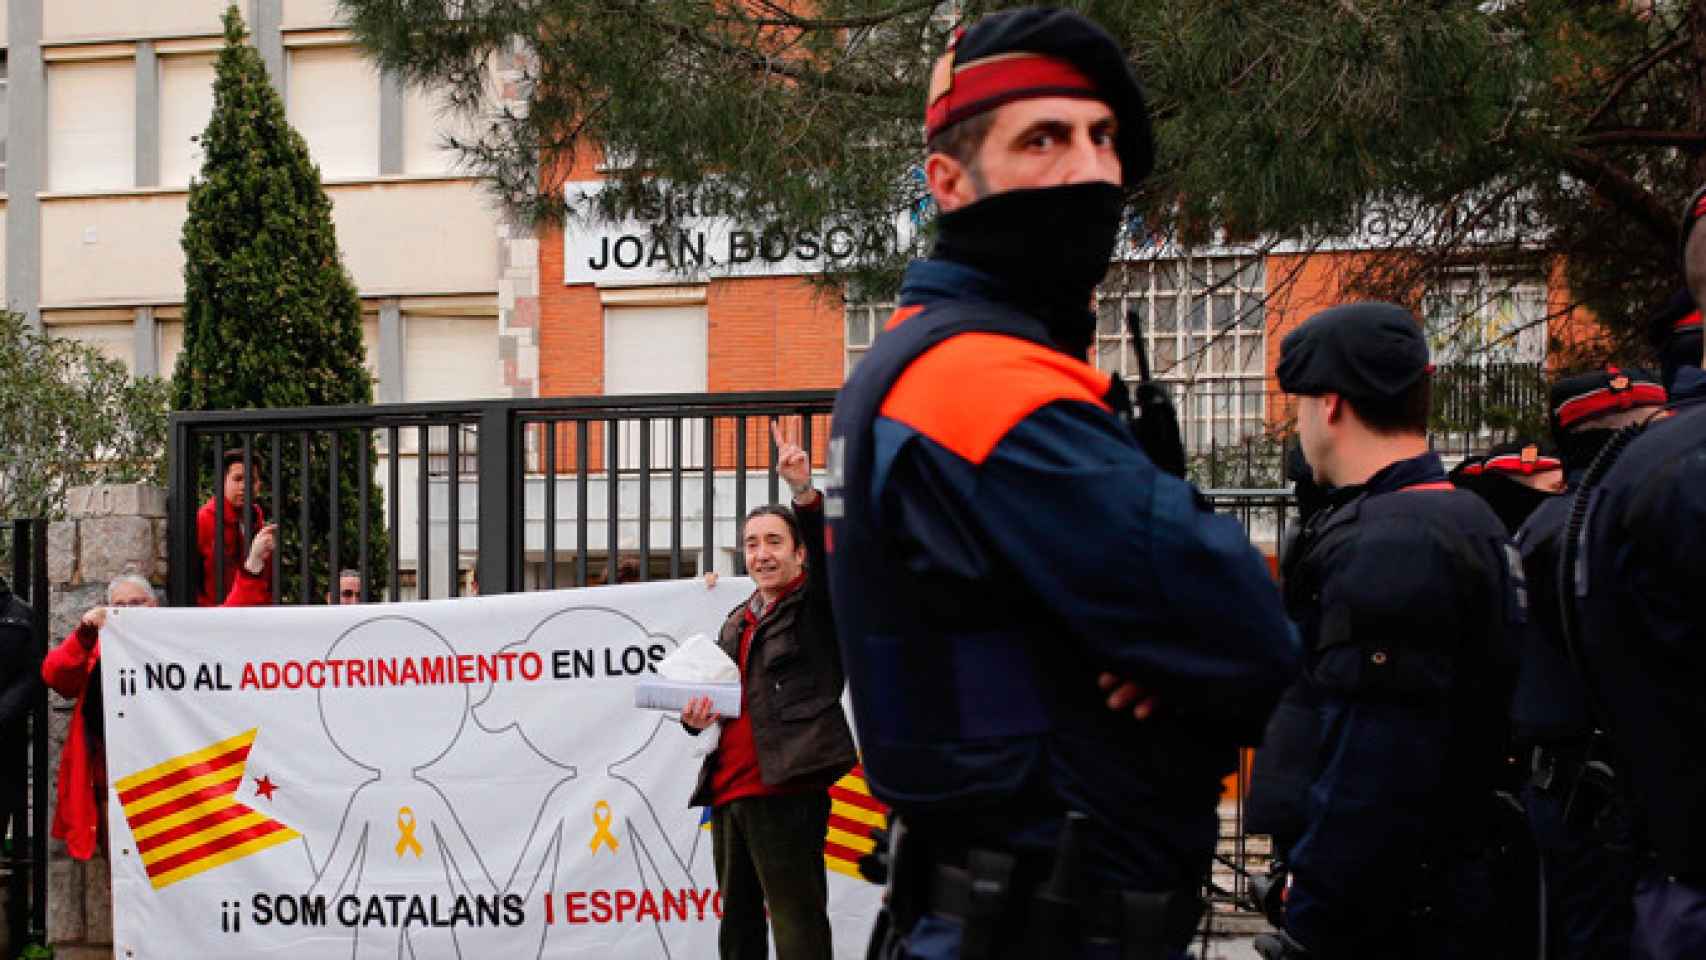 Mossos d'Esquadra en una protesta frente al instituto Joan Boscà de Barcelona, donde ha sido expedientado el profesor Francisco Oya por no enseñar que los catalanes son una raza / CG